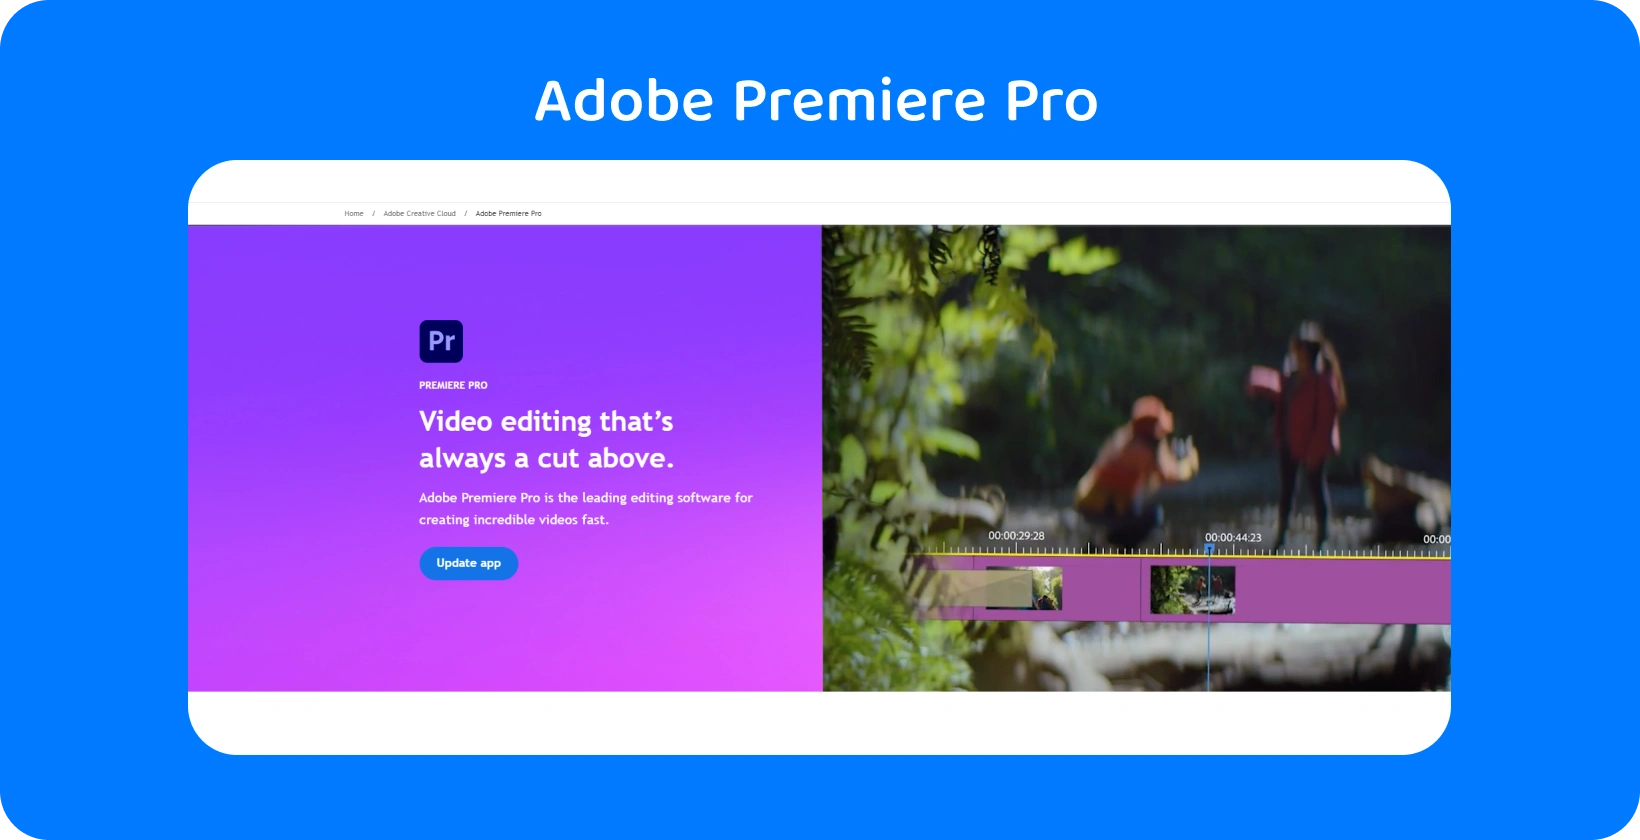 Интерфейс Adobe Premiere Pro, отображающий расширенные возможности редактирования видео, идеально подходит для быстрого и точного редактирования.